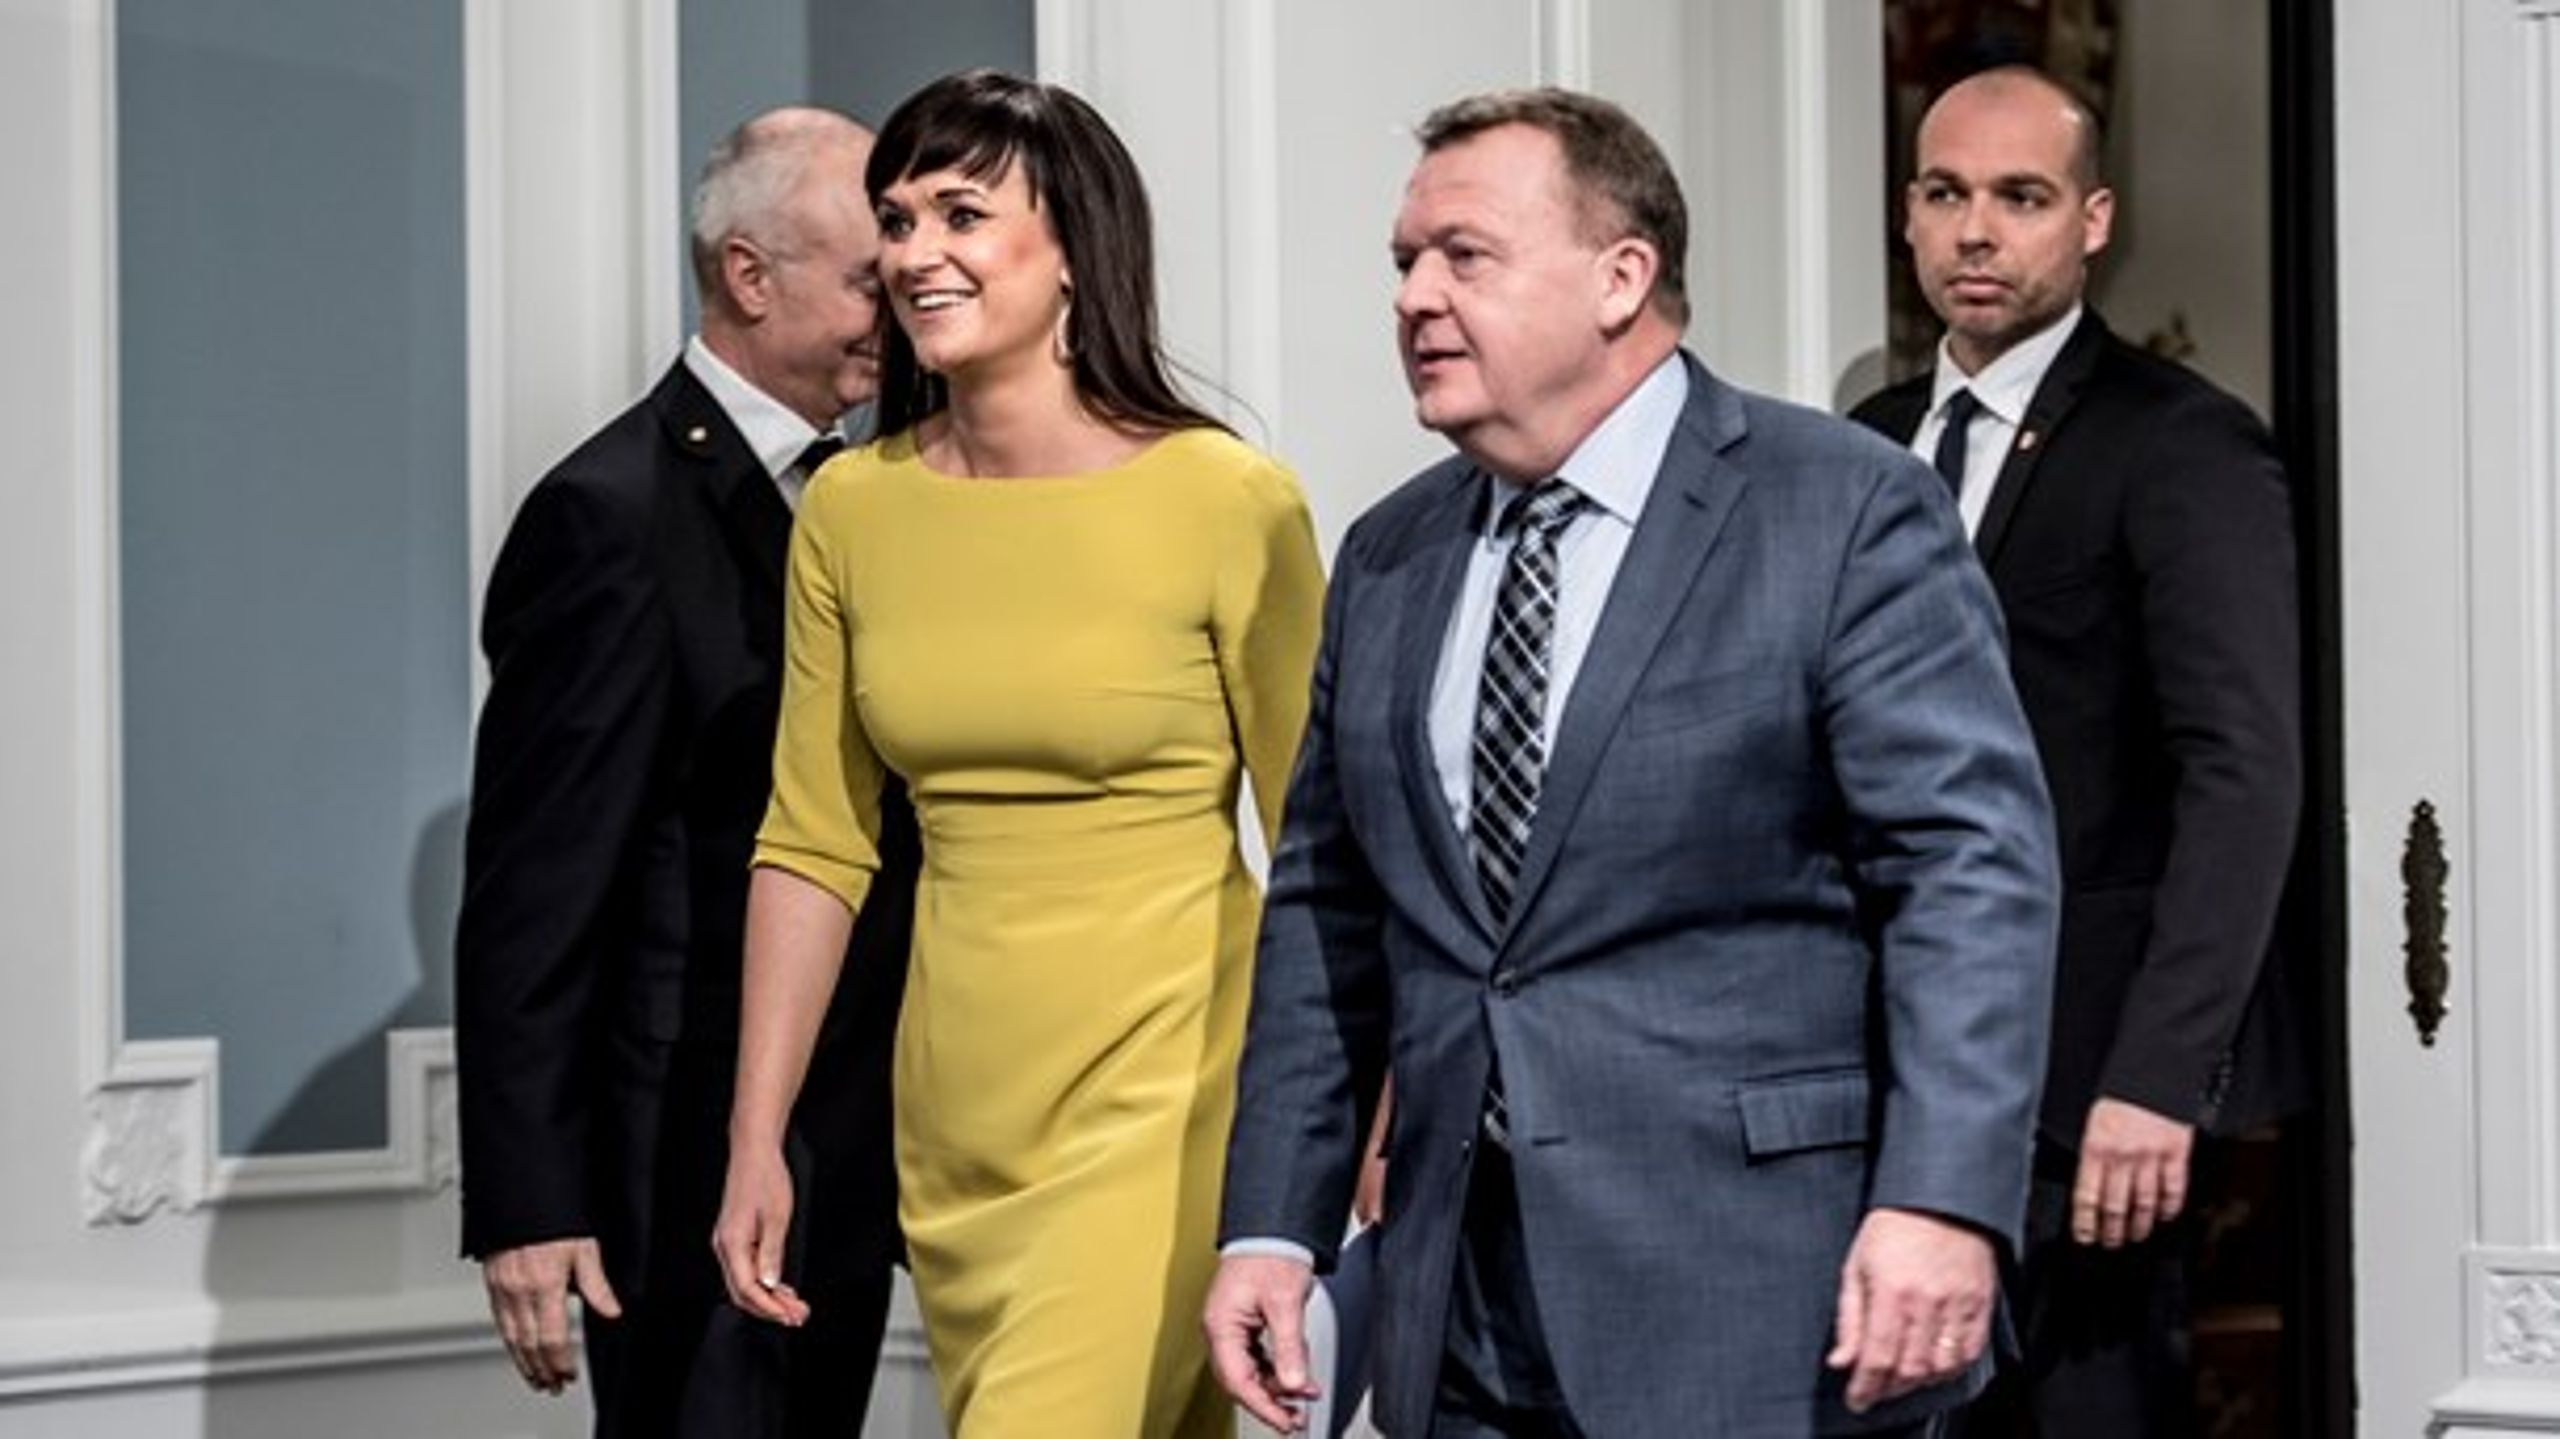 Nyt snit af målinger spår Venstre bedste resultat siden valget i 2015. Vælgerne ser ud til at belønne bl.a. den udflytningsplan, som Lars Løkke Rasmussen og Sophie Løhde her præsenterer.